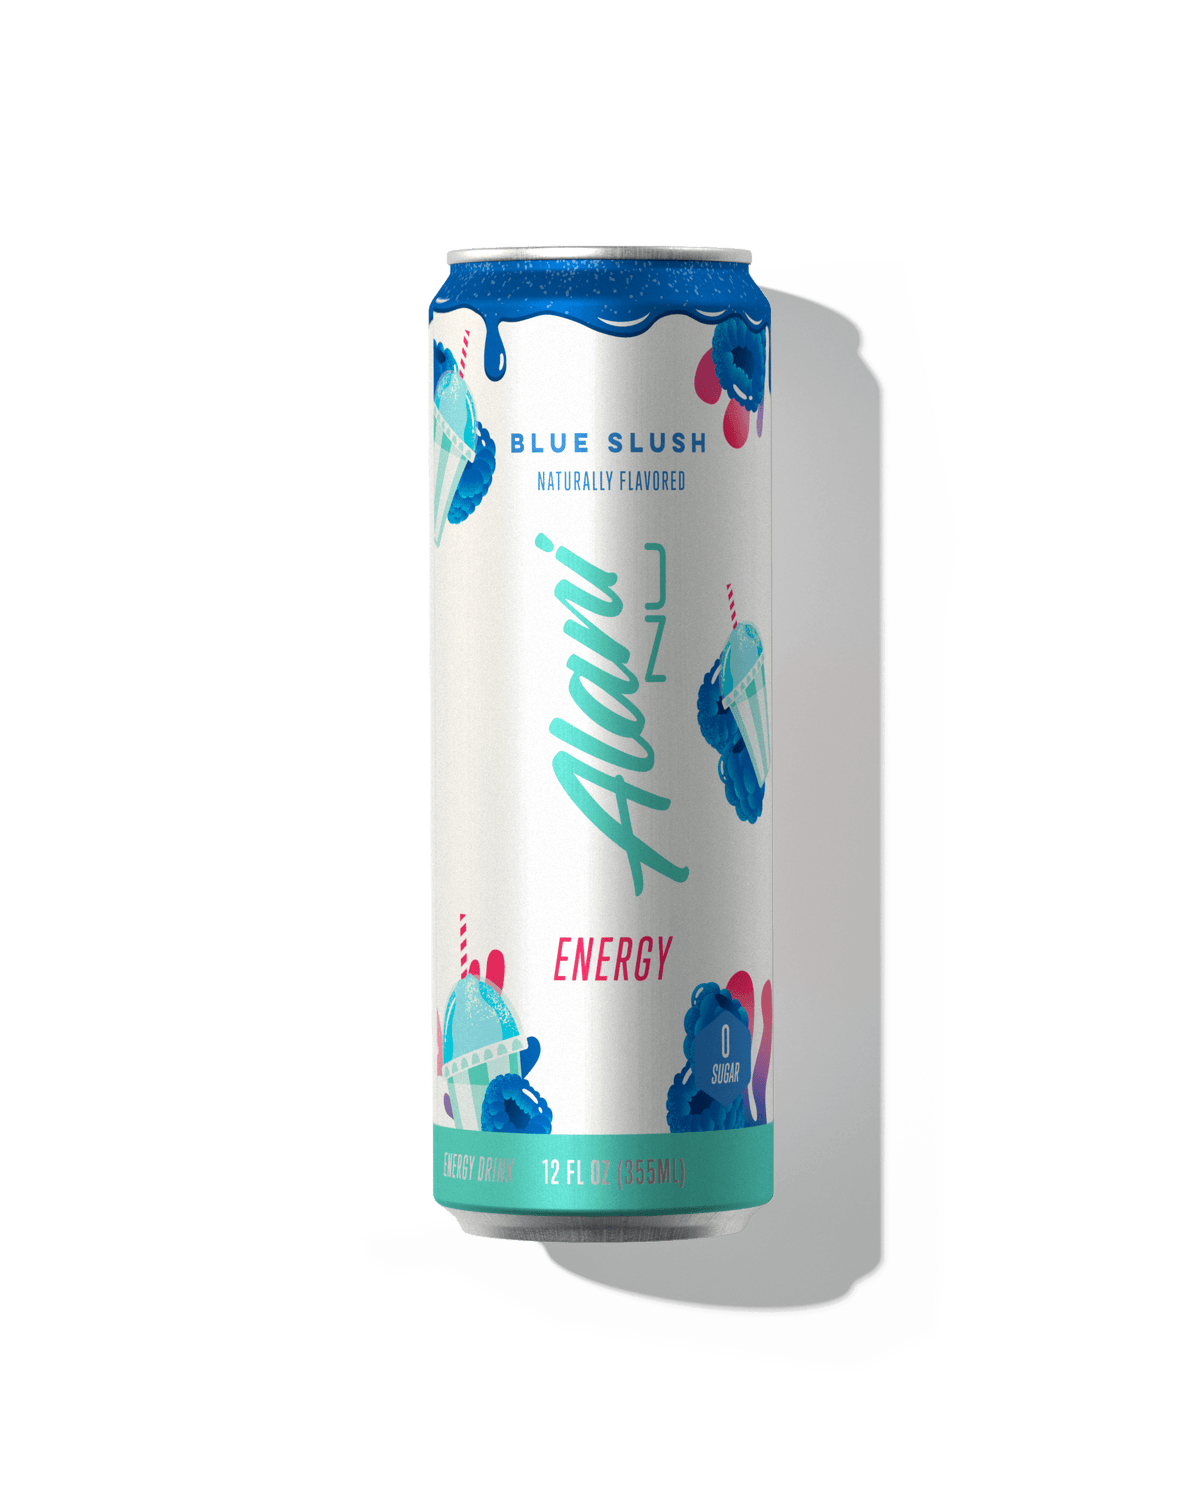 A 12 fl oz Energy Drink in Blue Slush flavor.